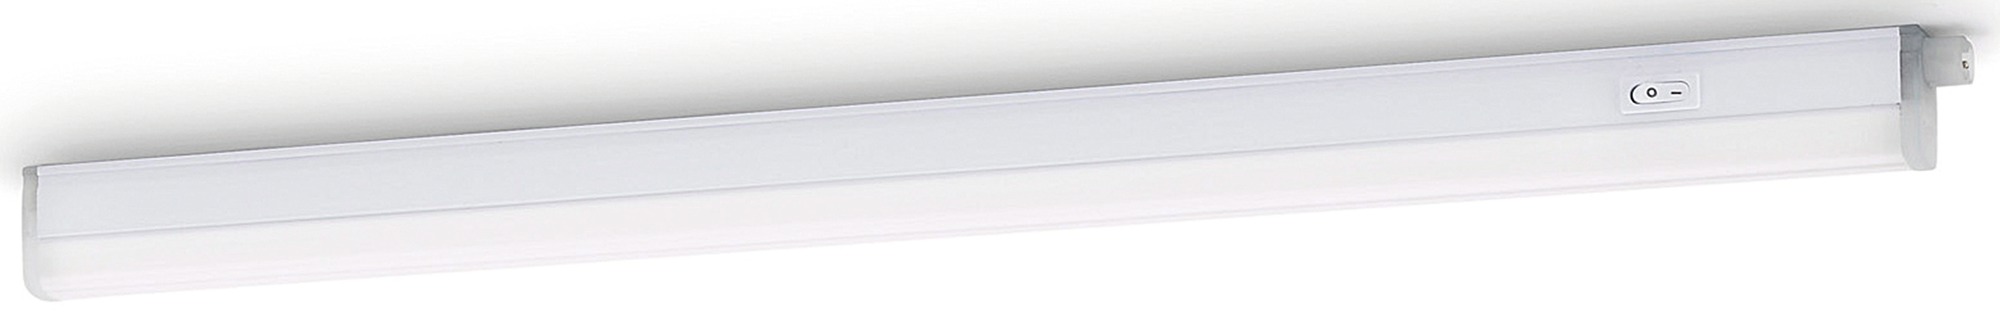 Réglette Linear LED 9 W Philips - Longueur 54,8 cm